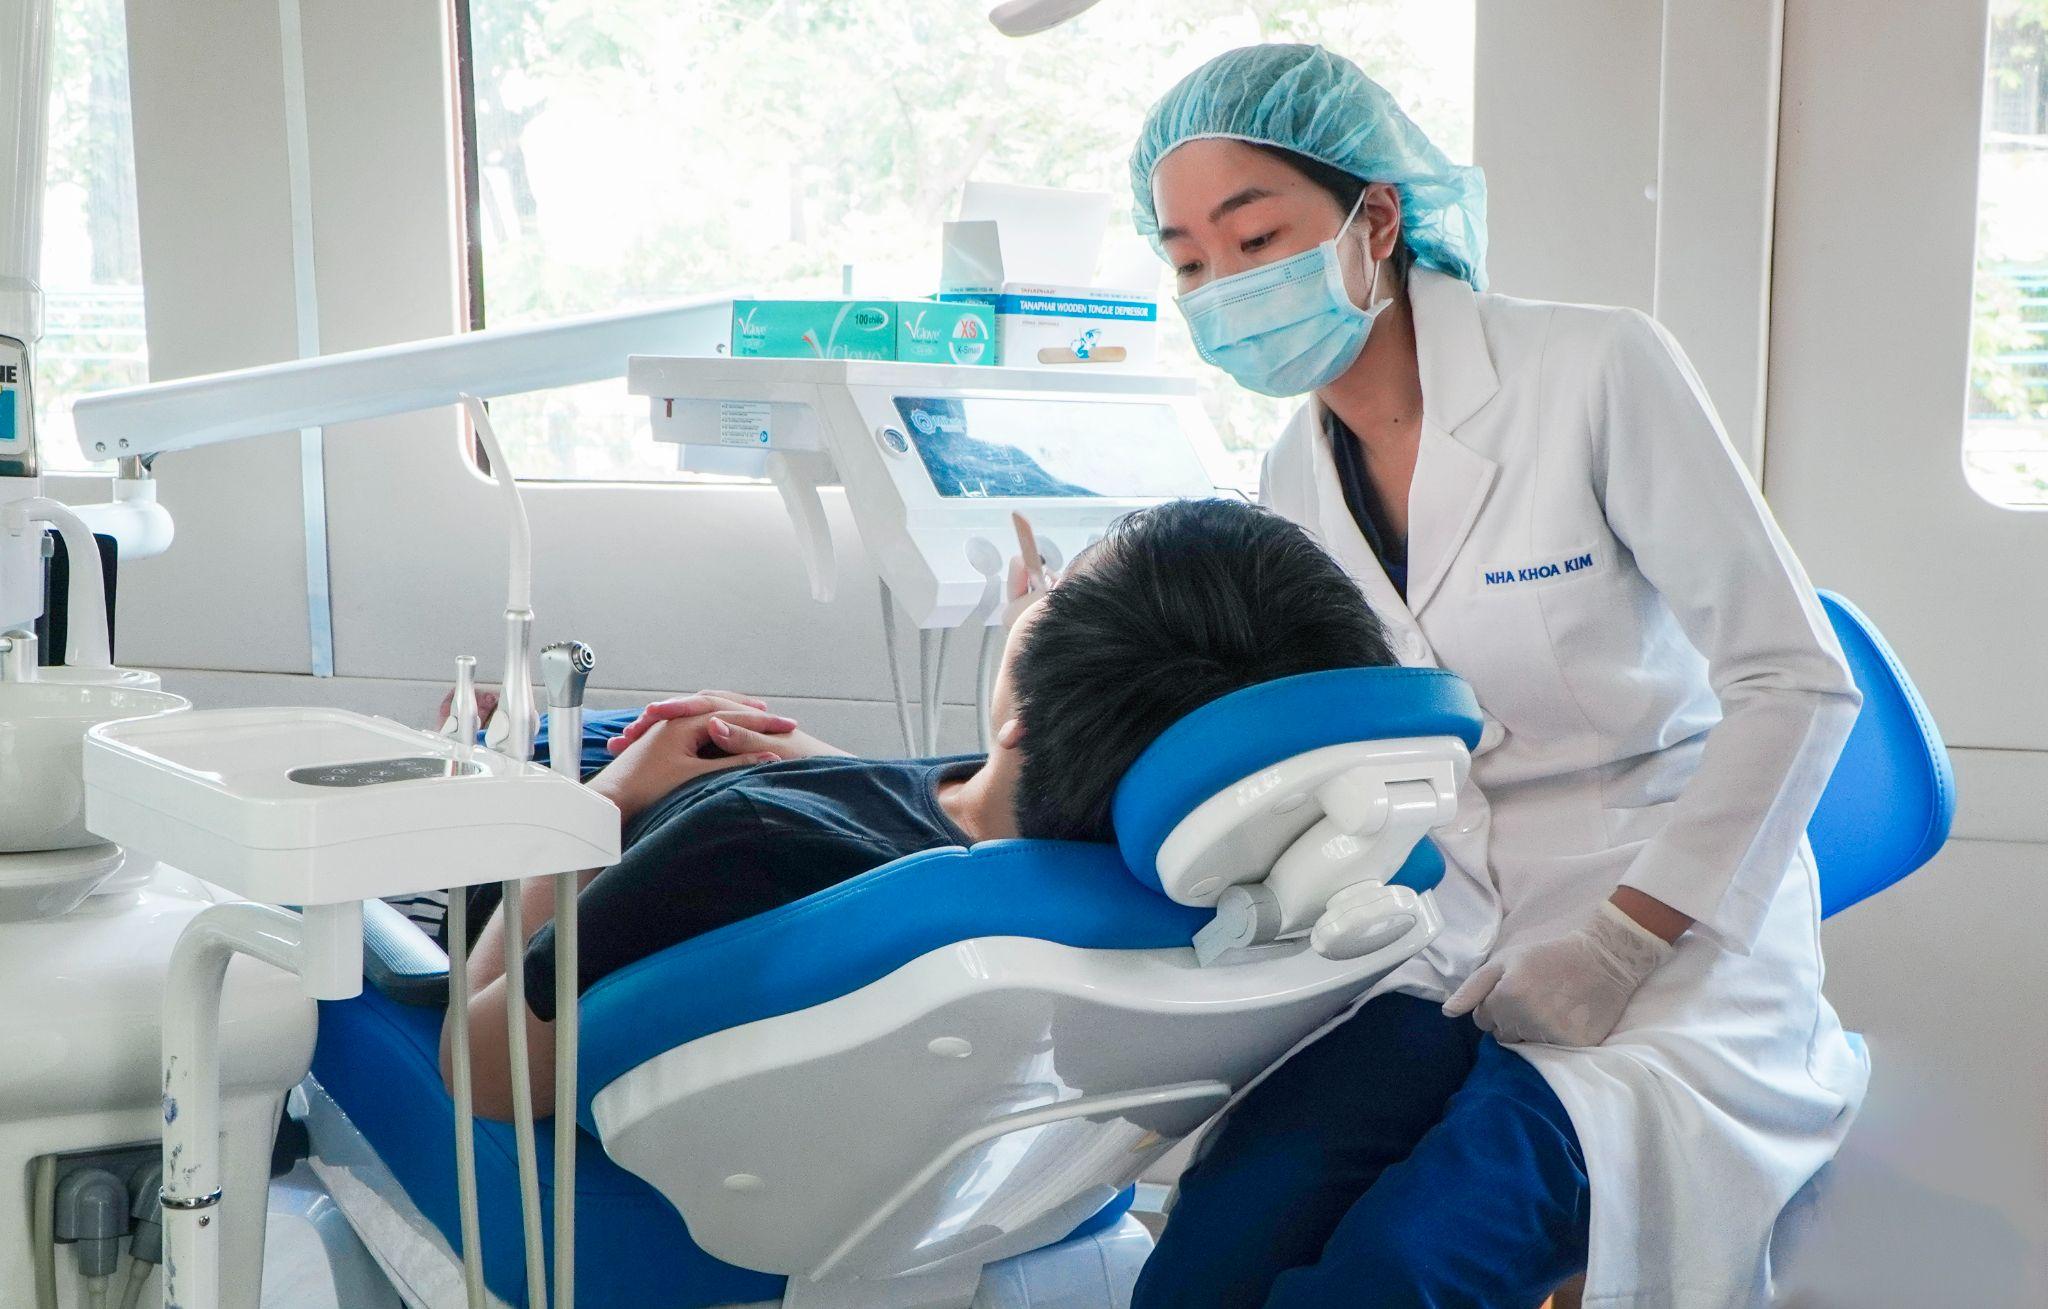 “Hành trình Răng hạnh phúc” Nha Khoa Kim trở lại, tiếp tục sứ mệnh nâng cao ý thức chăm sóc răng miệng cộng đồng - 4